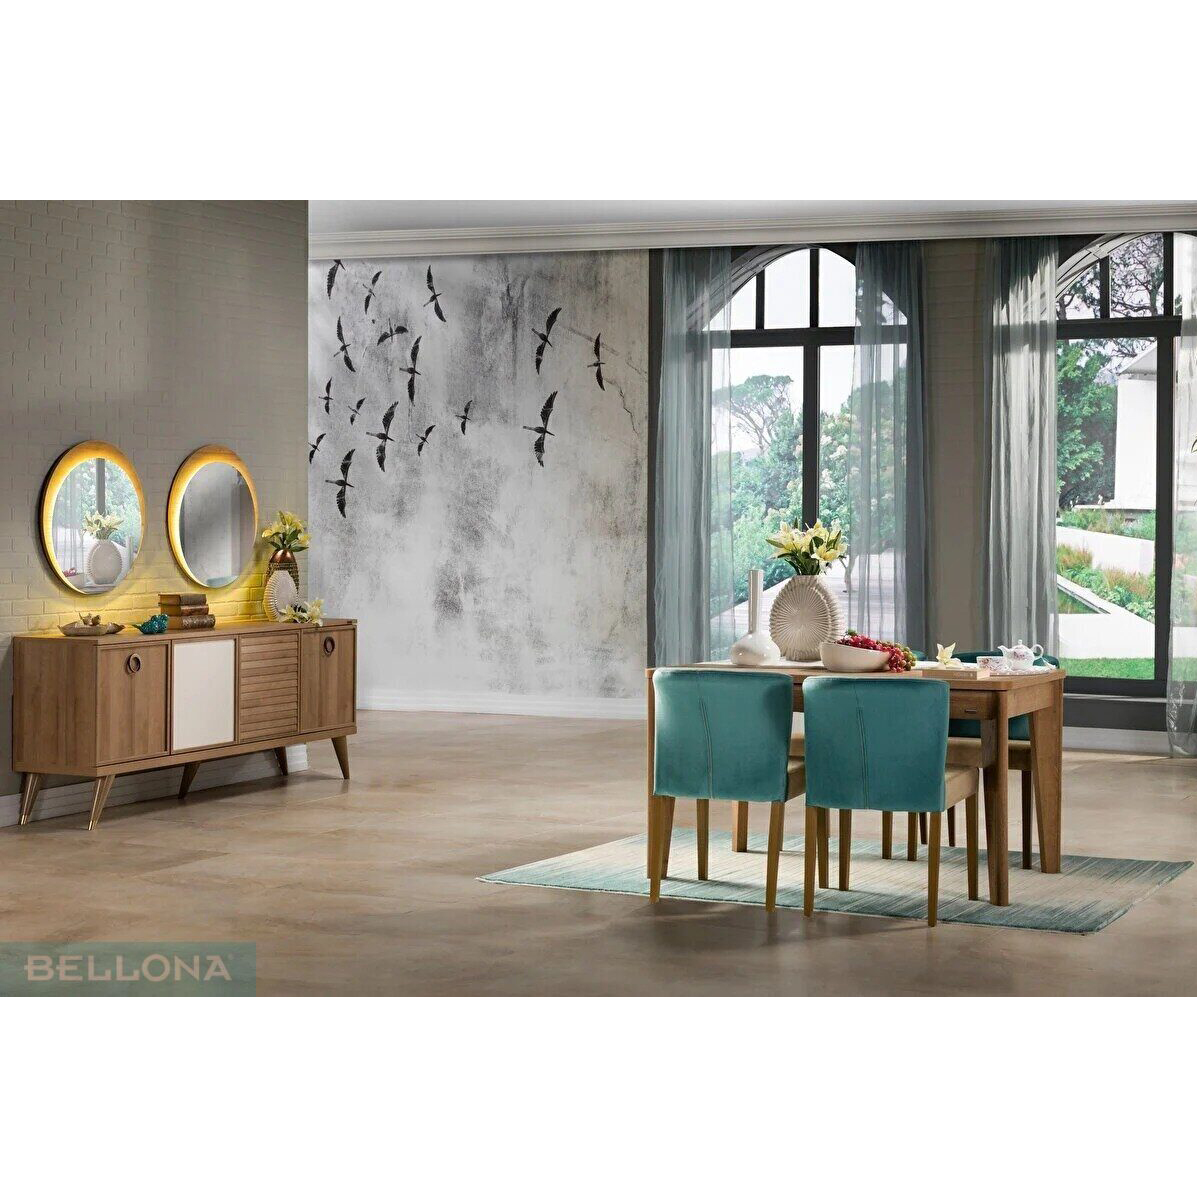 Стол обеденный Bellona Vienza, раскладной, mini, размер 140(180)x80x77 см (VIEN-14A)VIEN-14A